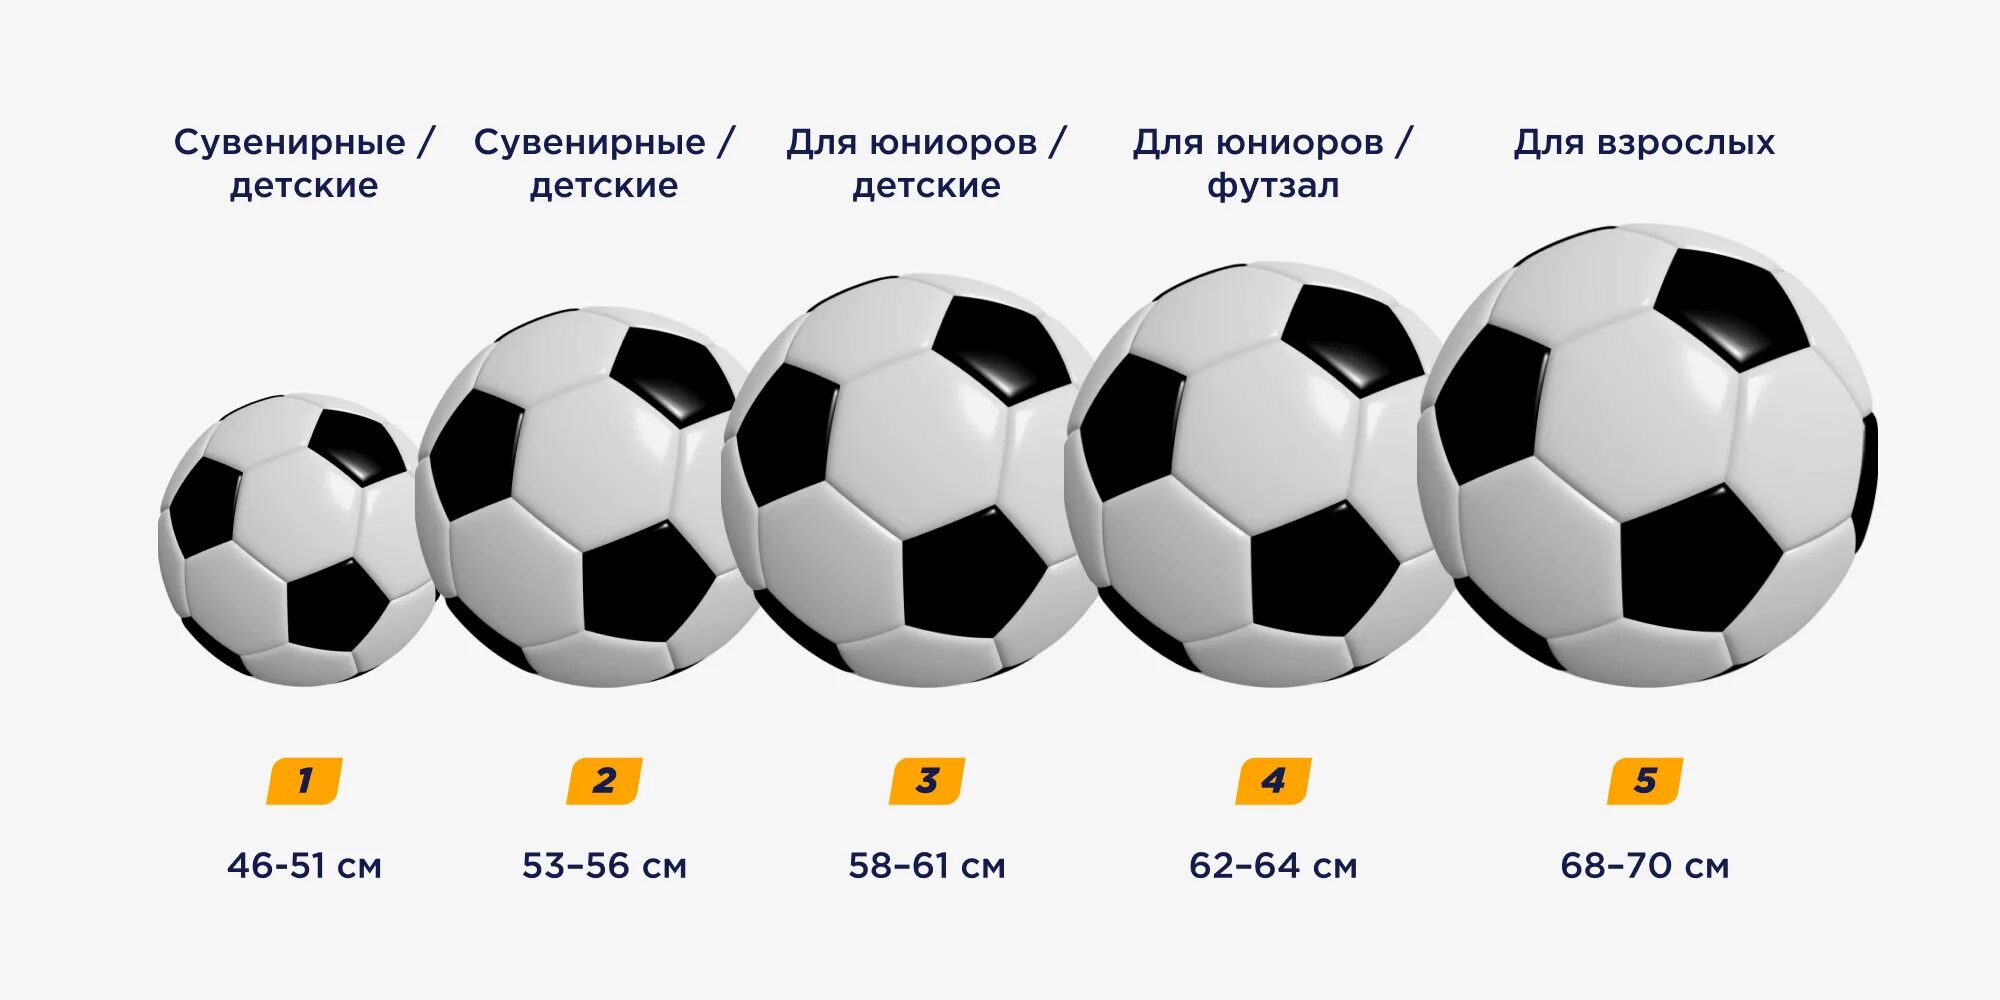 Вес футбольного мяча в граммах. Мяч 5 размера диаметр. Вес футбольного мяча 4 размера. Размер футбольного мяча диаметр. Мяч футбольный размер 5 диаметр.